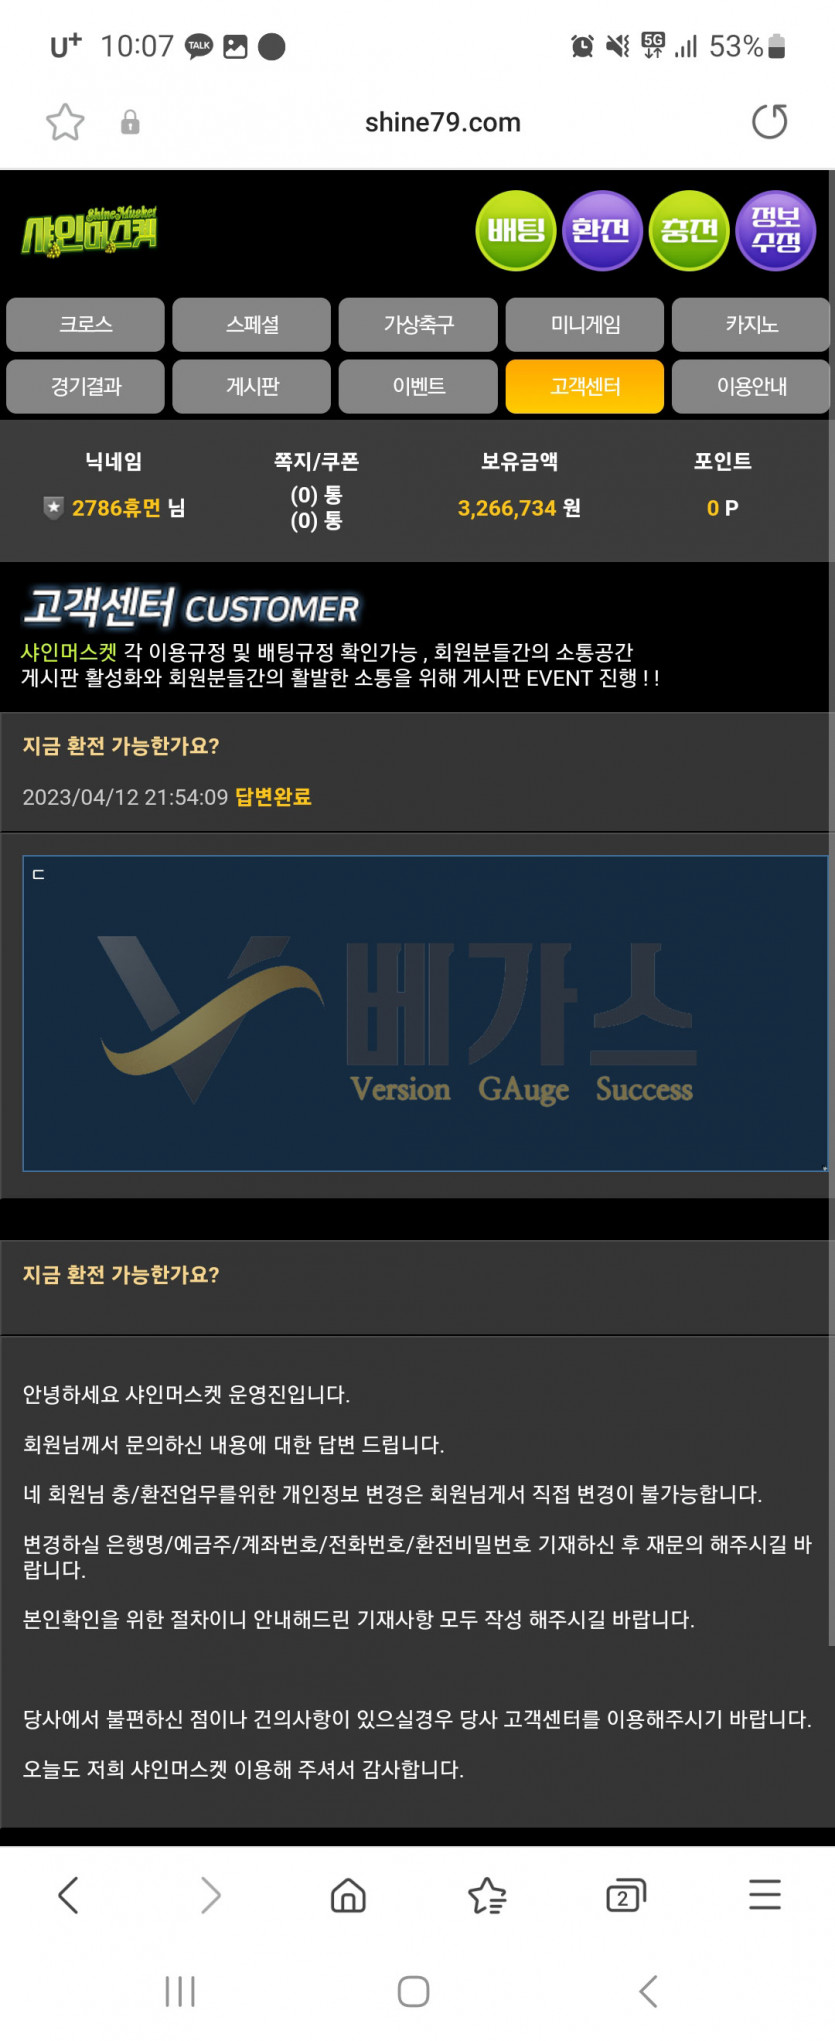 먹튀사이트 샤인머스켓(shine79.com) 환전 계좌 변경 요청 먹튀검증 증거자료3